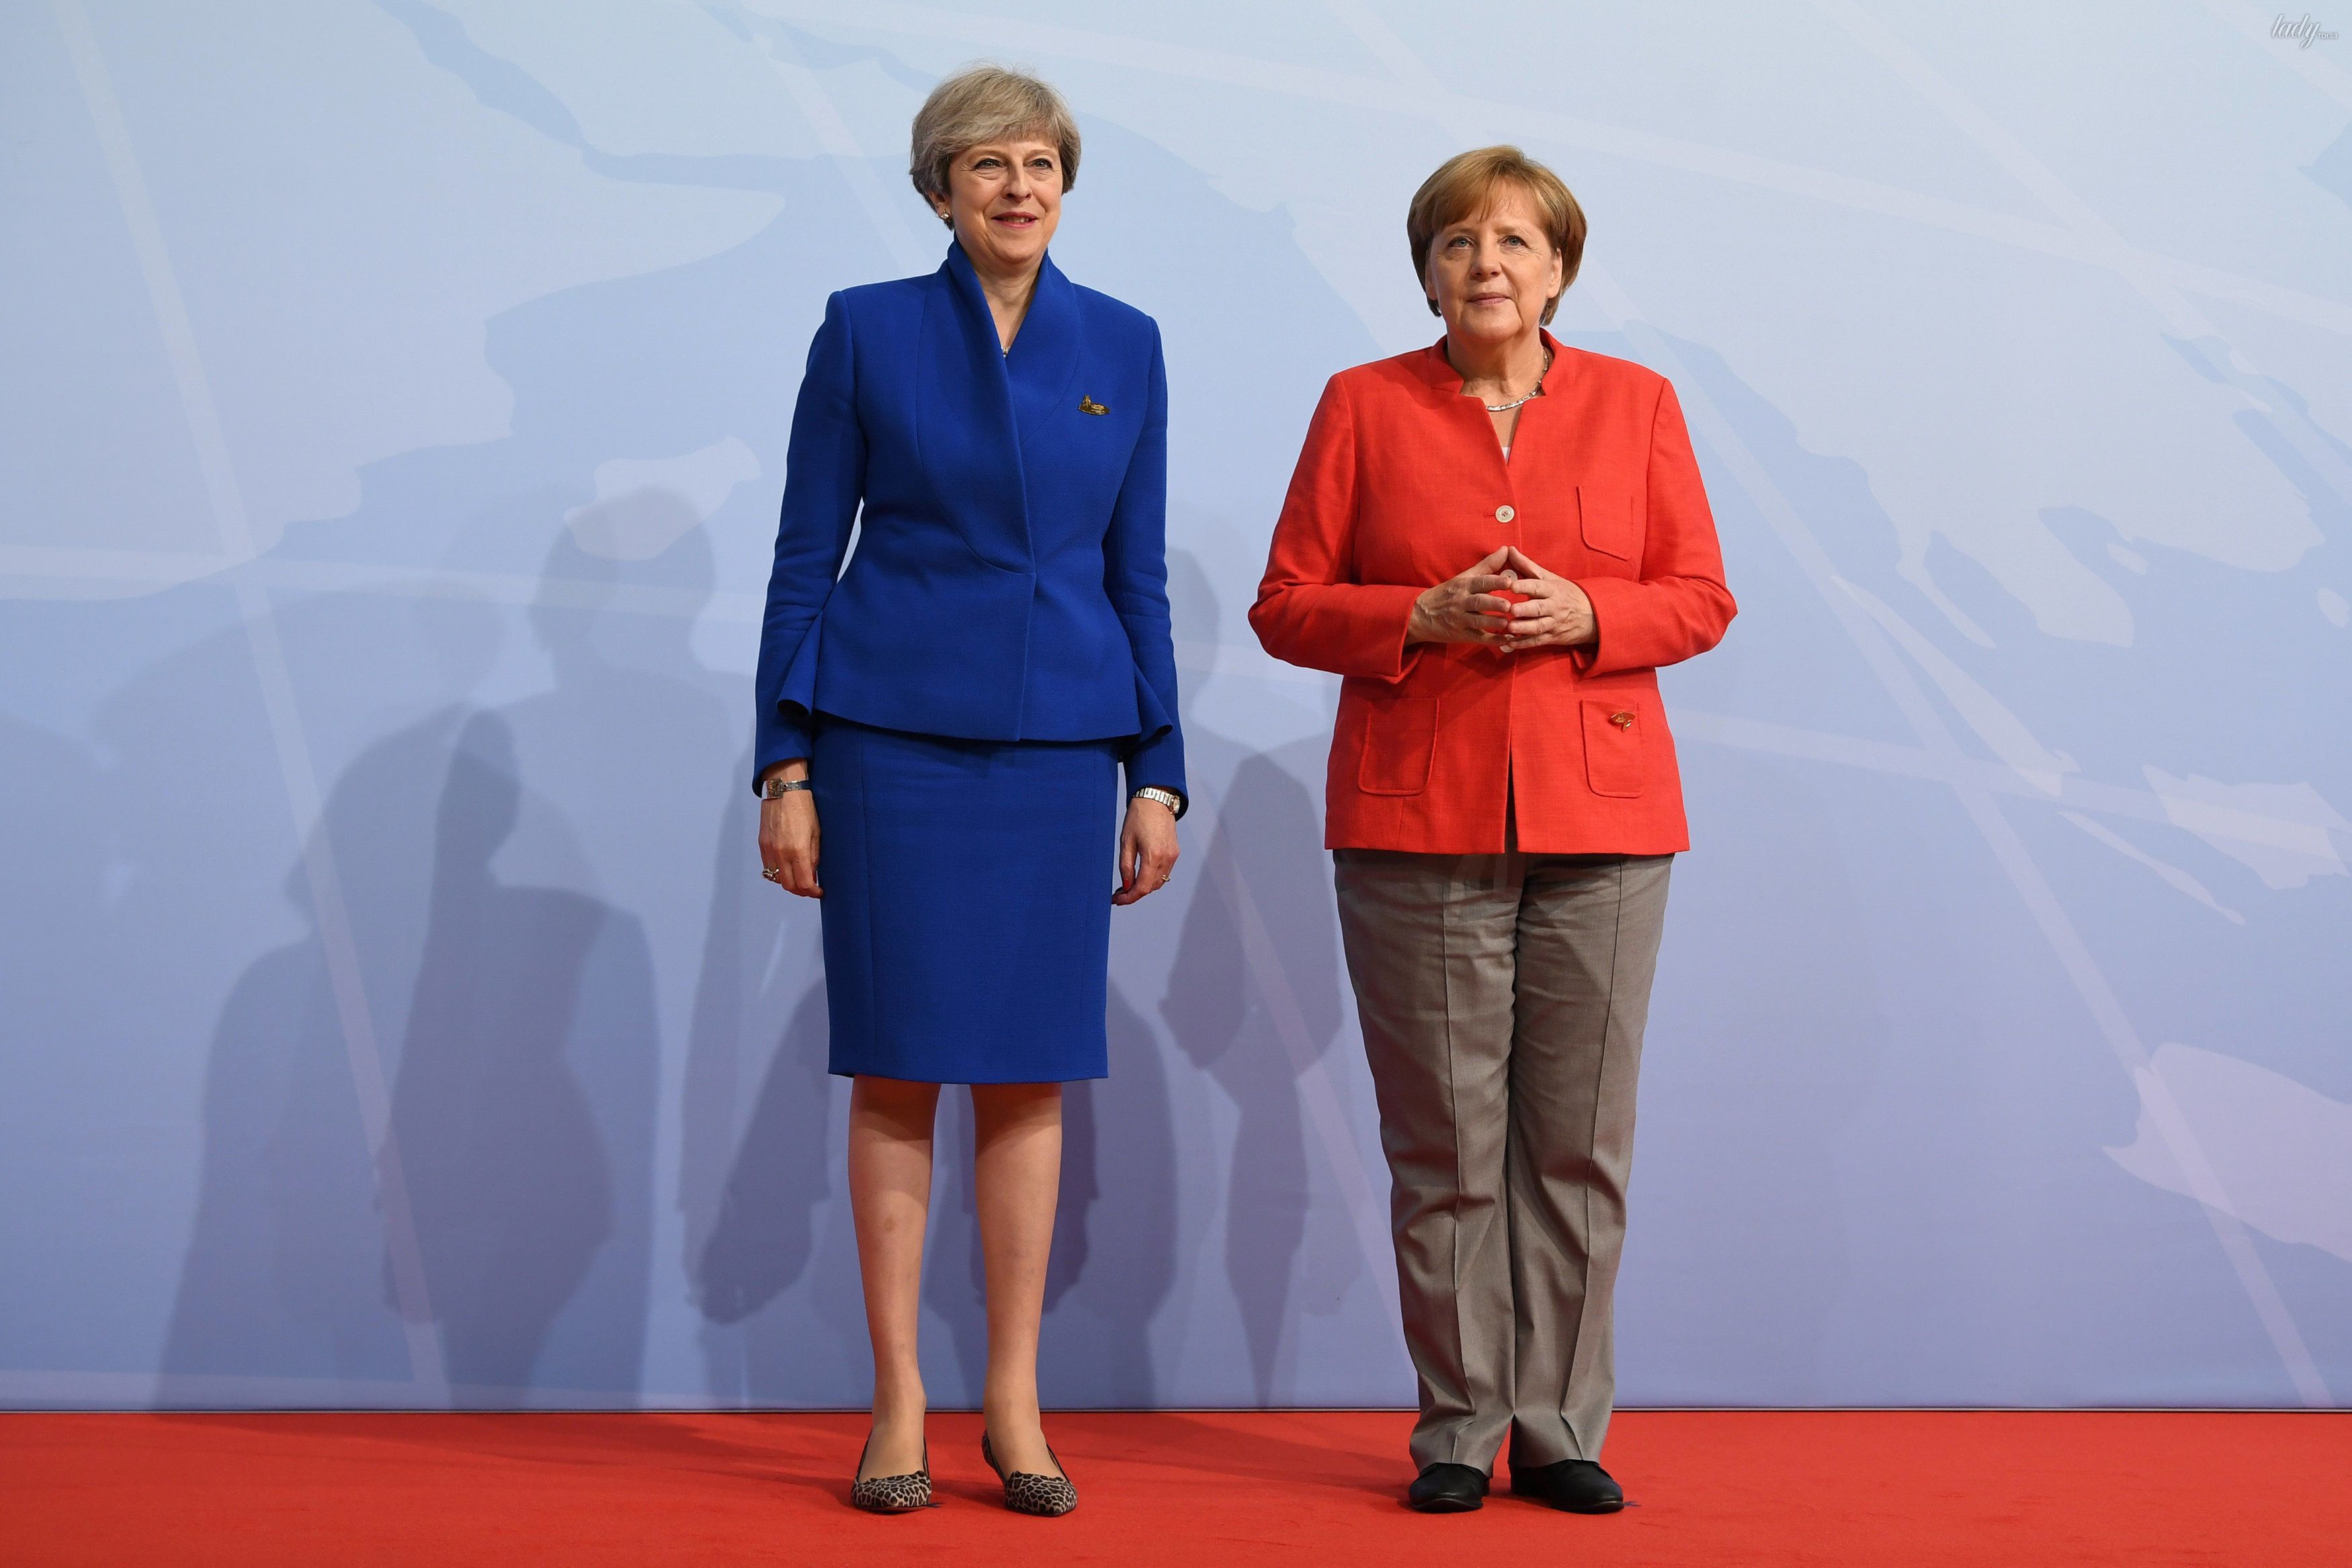 Битва нарядів: Тереза Мей vs Ангела Меркель. Тереза Мей і Ангела Меркель наділи на офіційний захід яскраві вбрання.